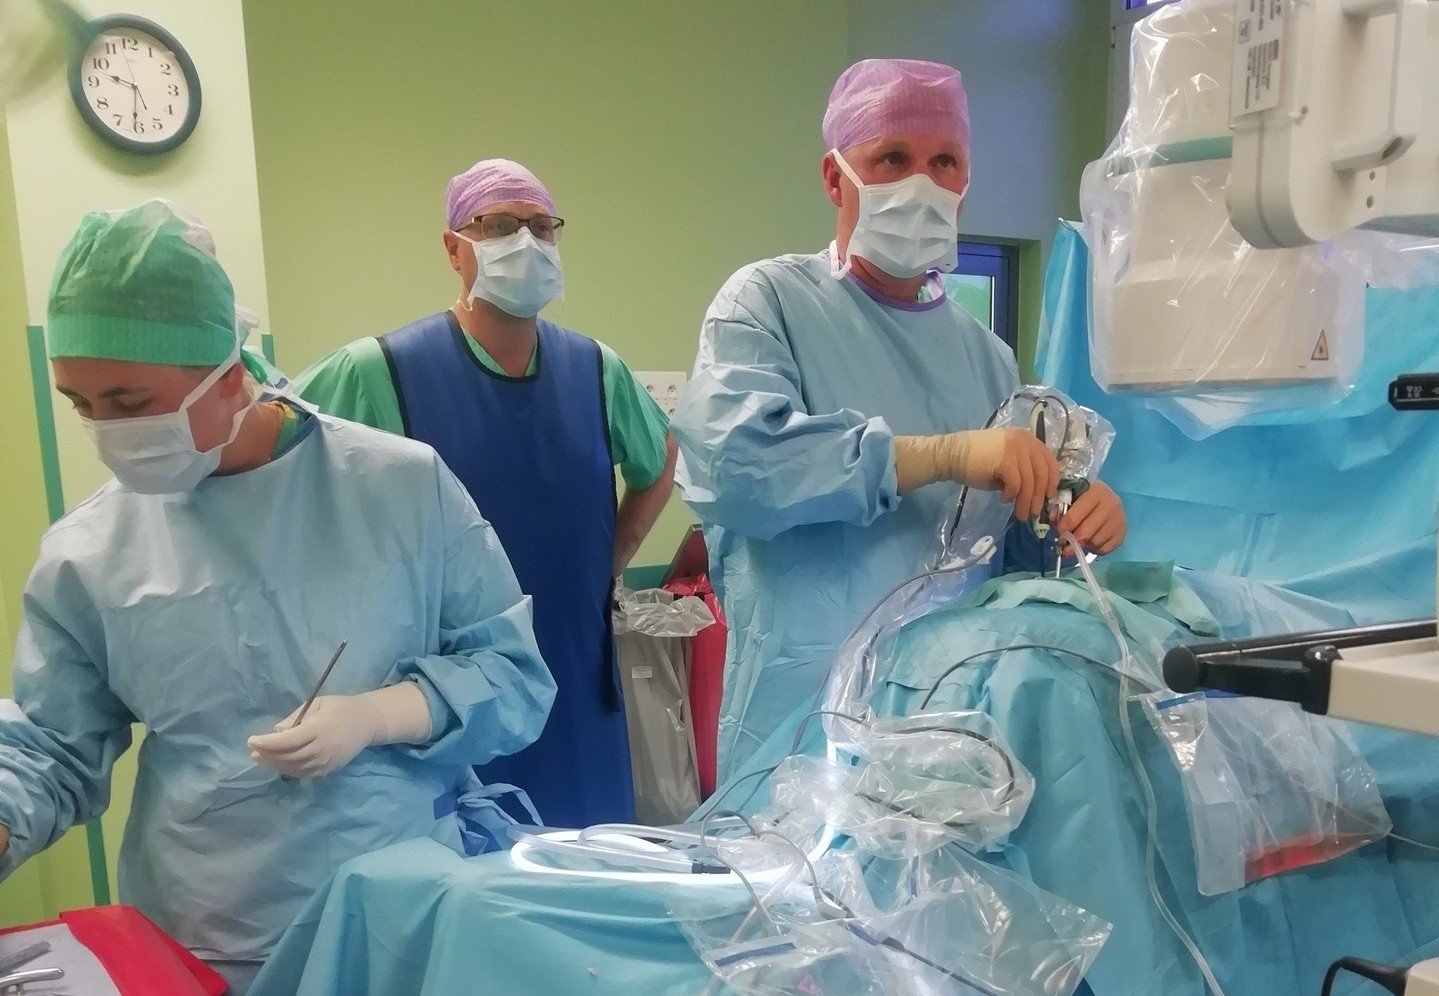 Szpital Kliniczny im W. Degi w Poznaniu po raz pierwszy w Polsce zastosował  endoskopową technikę UBE leczenia schorzeń kręgosłupa | Głos Wielkopolski